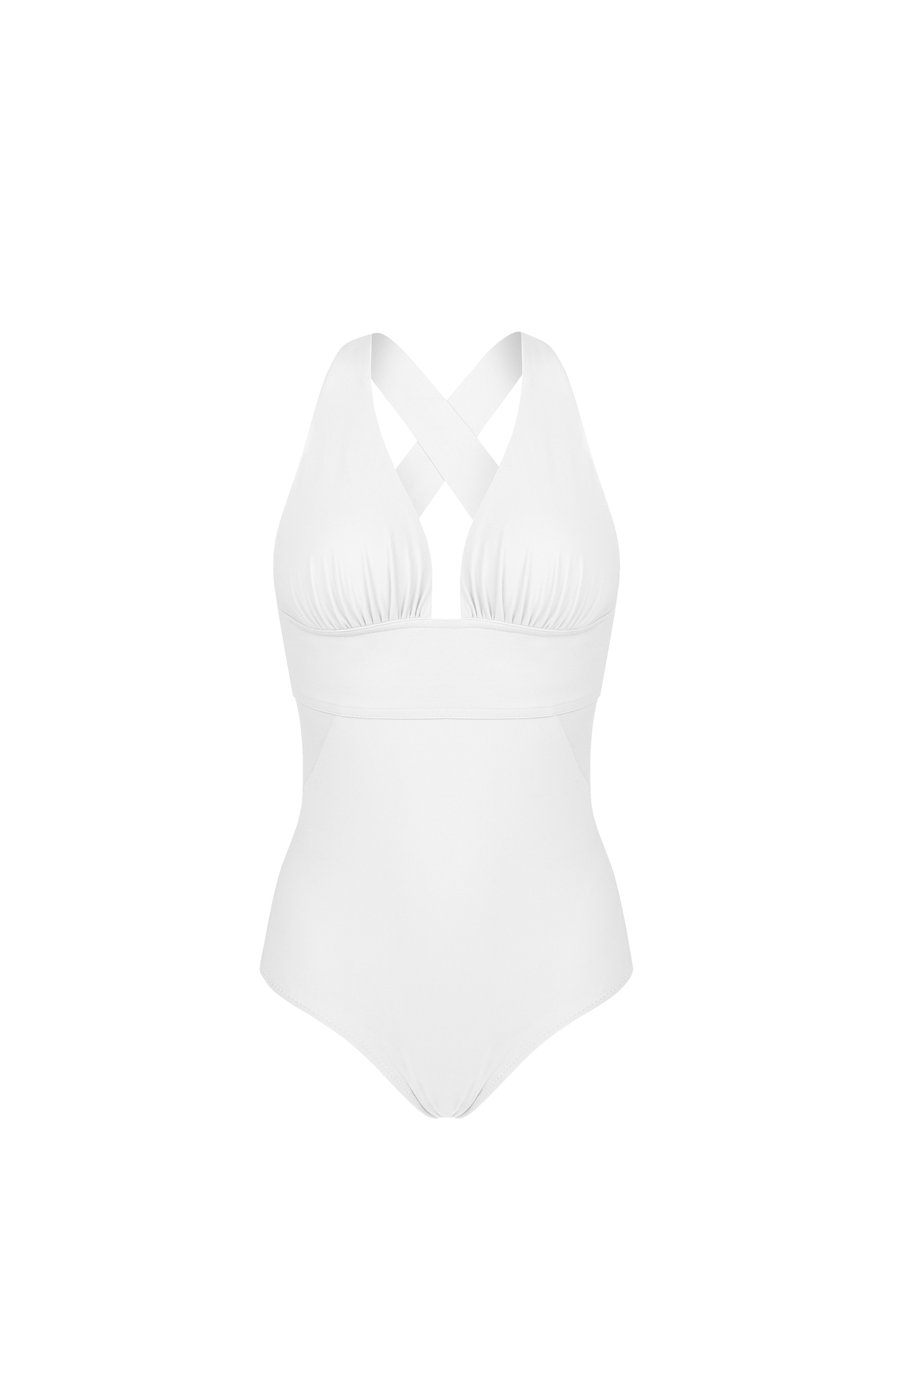 capri White back-crossed swimsuit